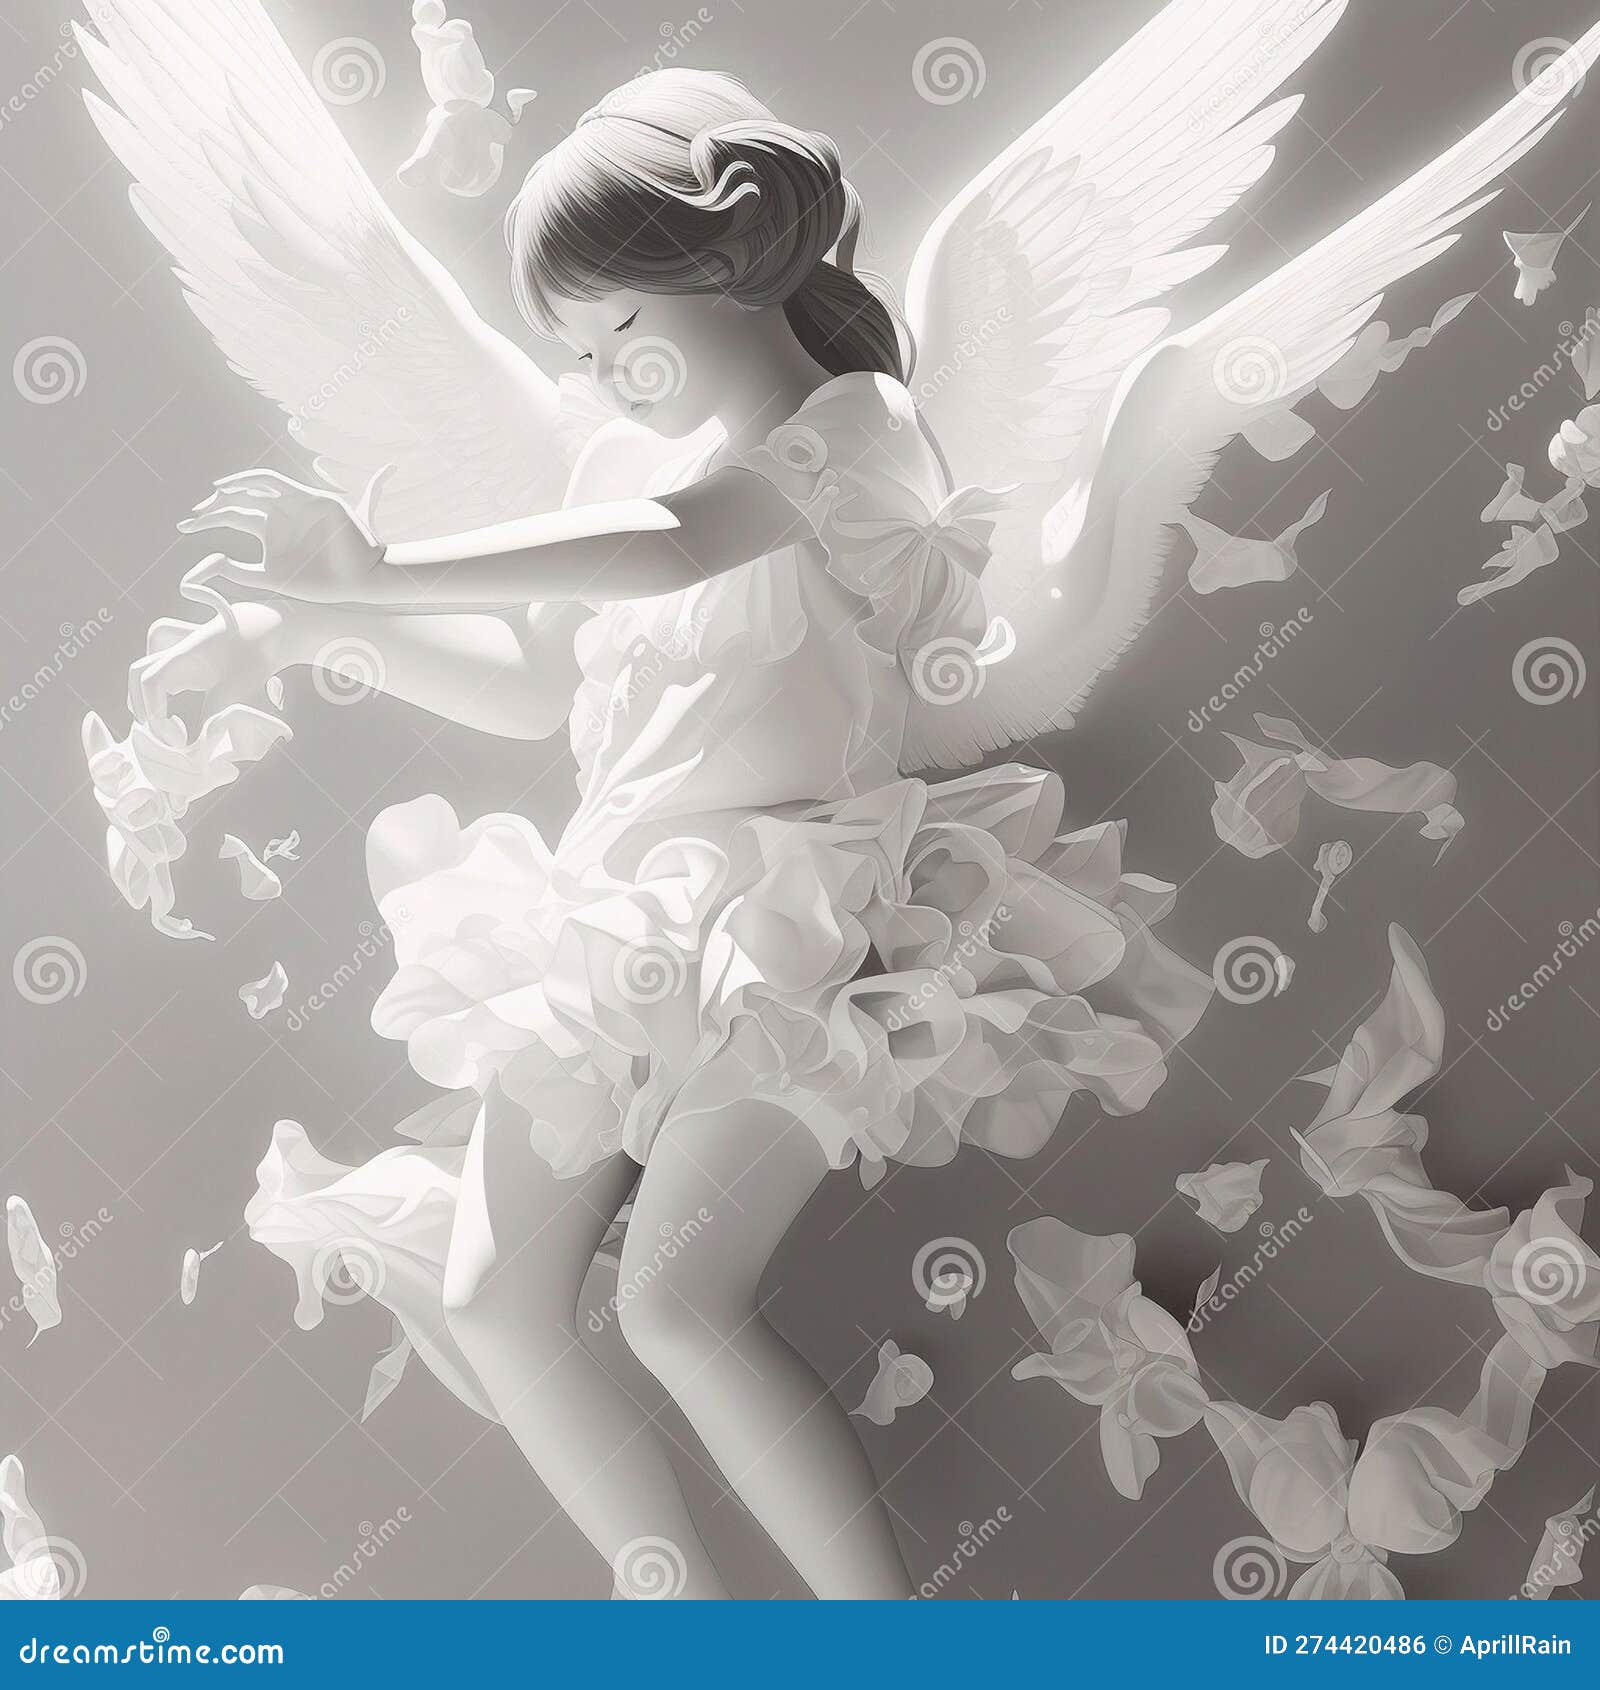 3d model enfant angel , white color, tranquility